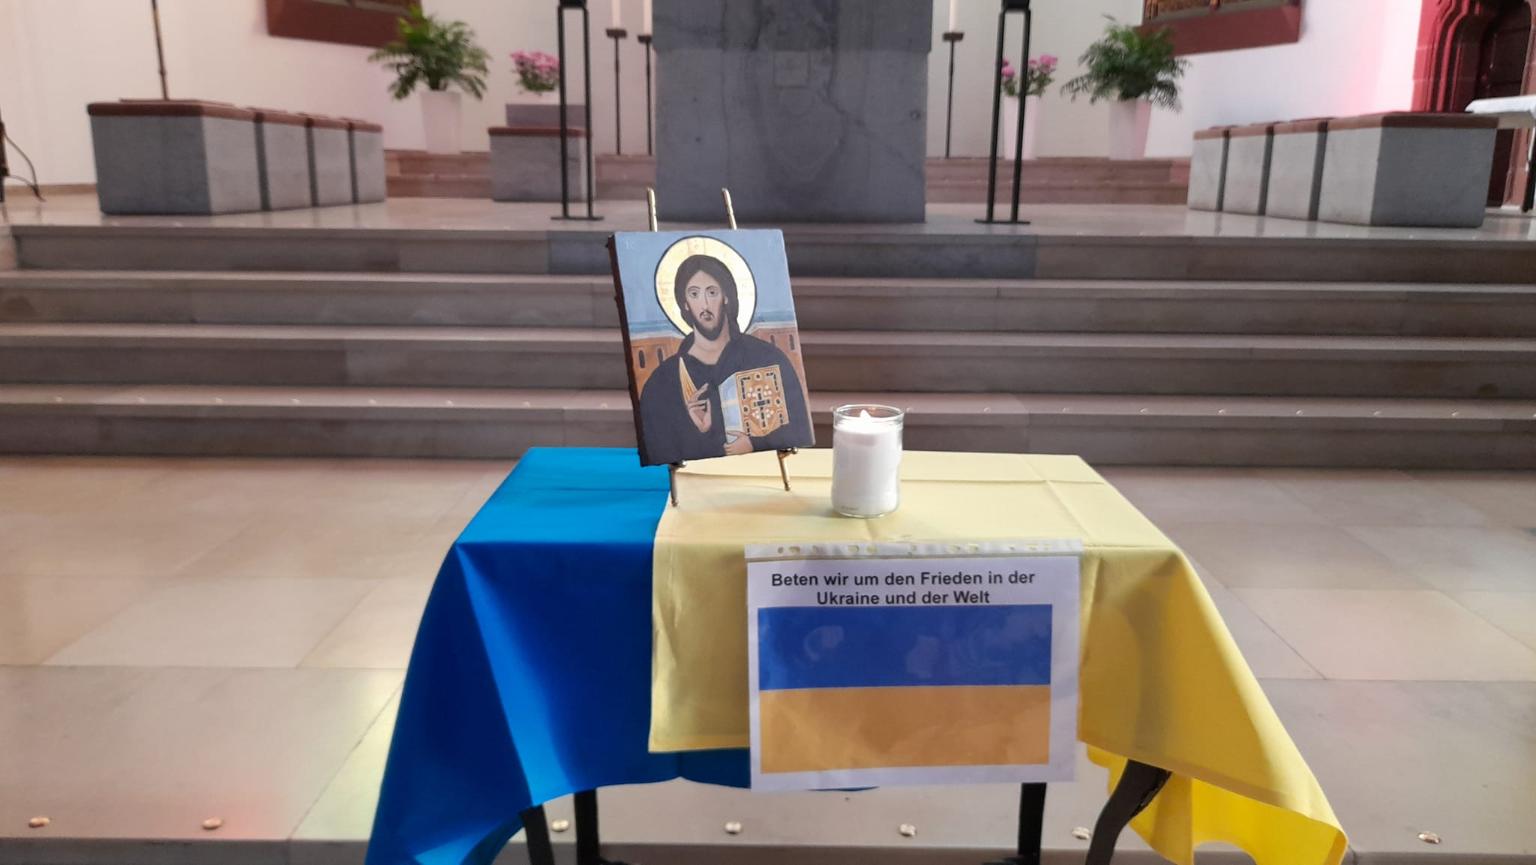 Beten für die Ukraine (c) Christian Schneider Ofs